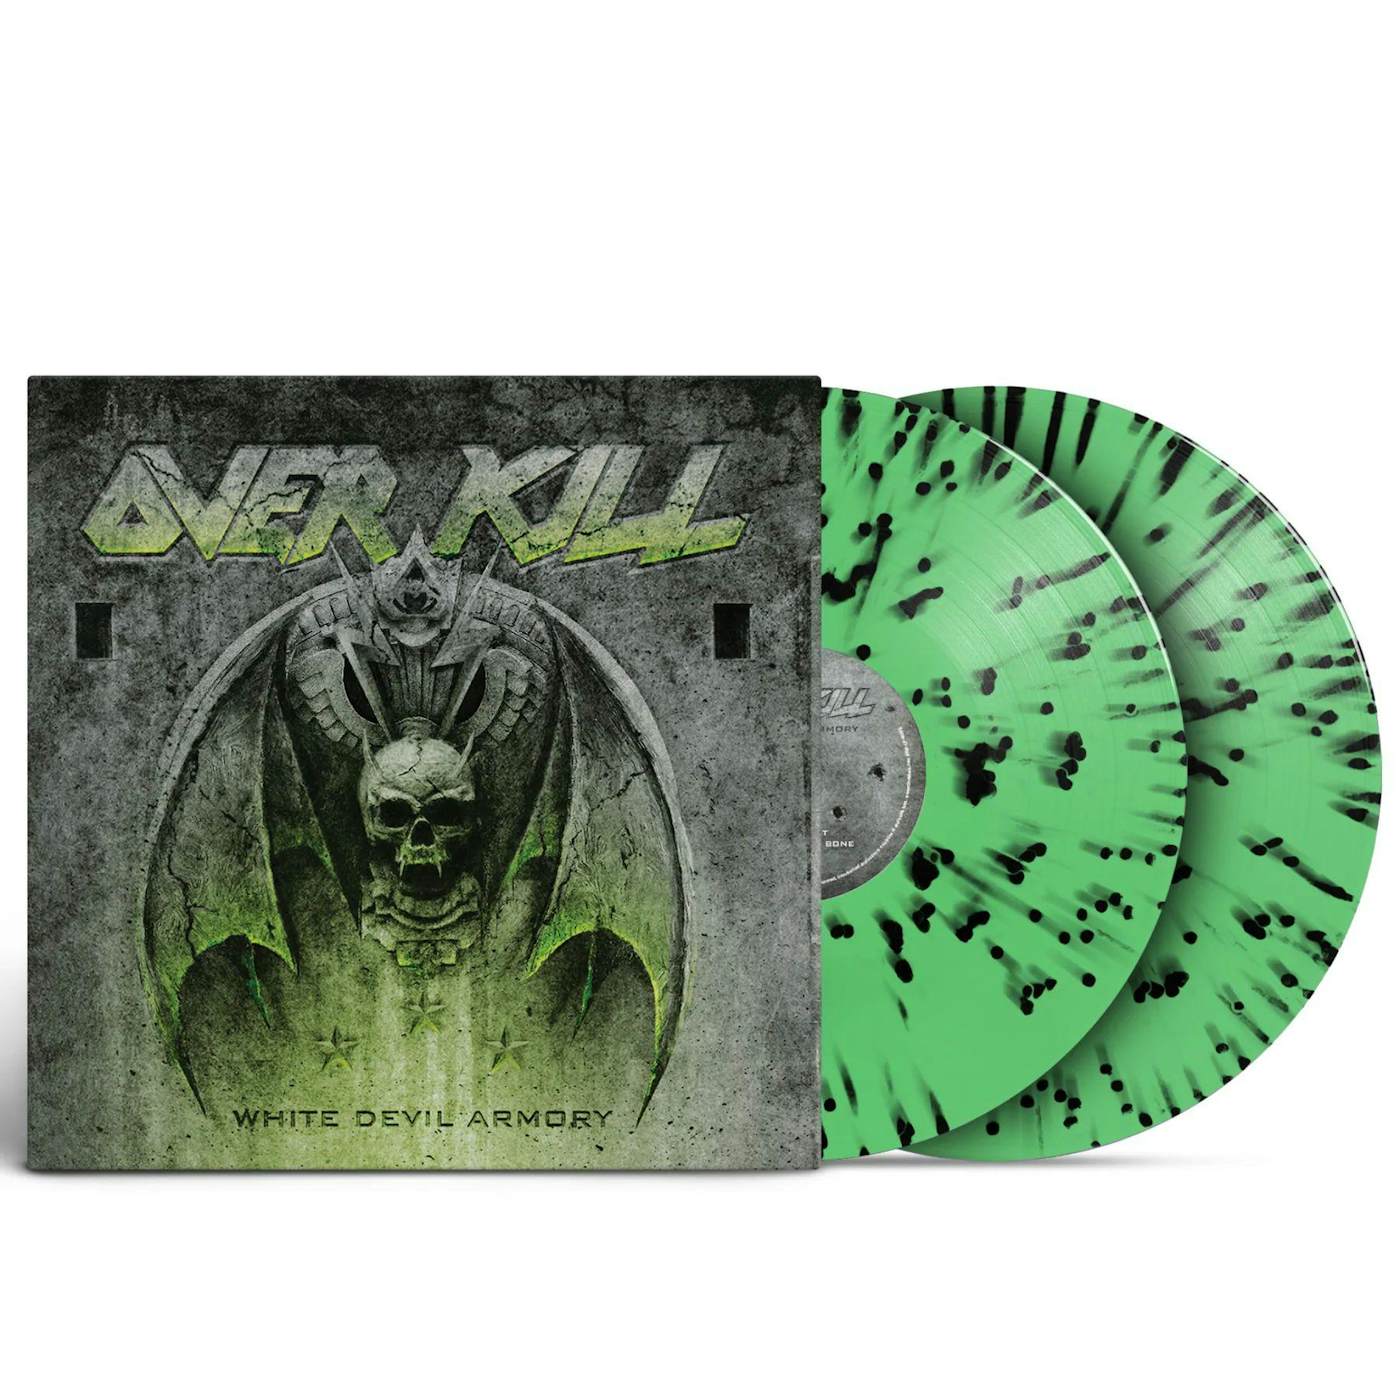 Overkill White Devil Armory - Neon Green w/Black Splatter Vinyl Record